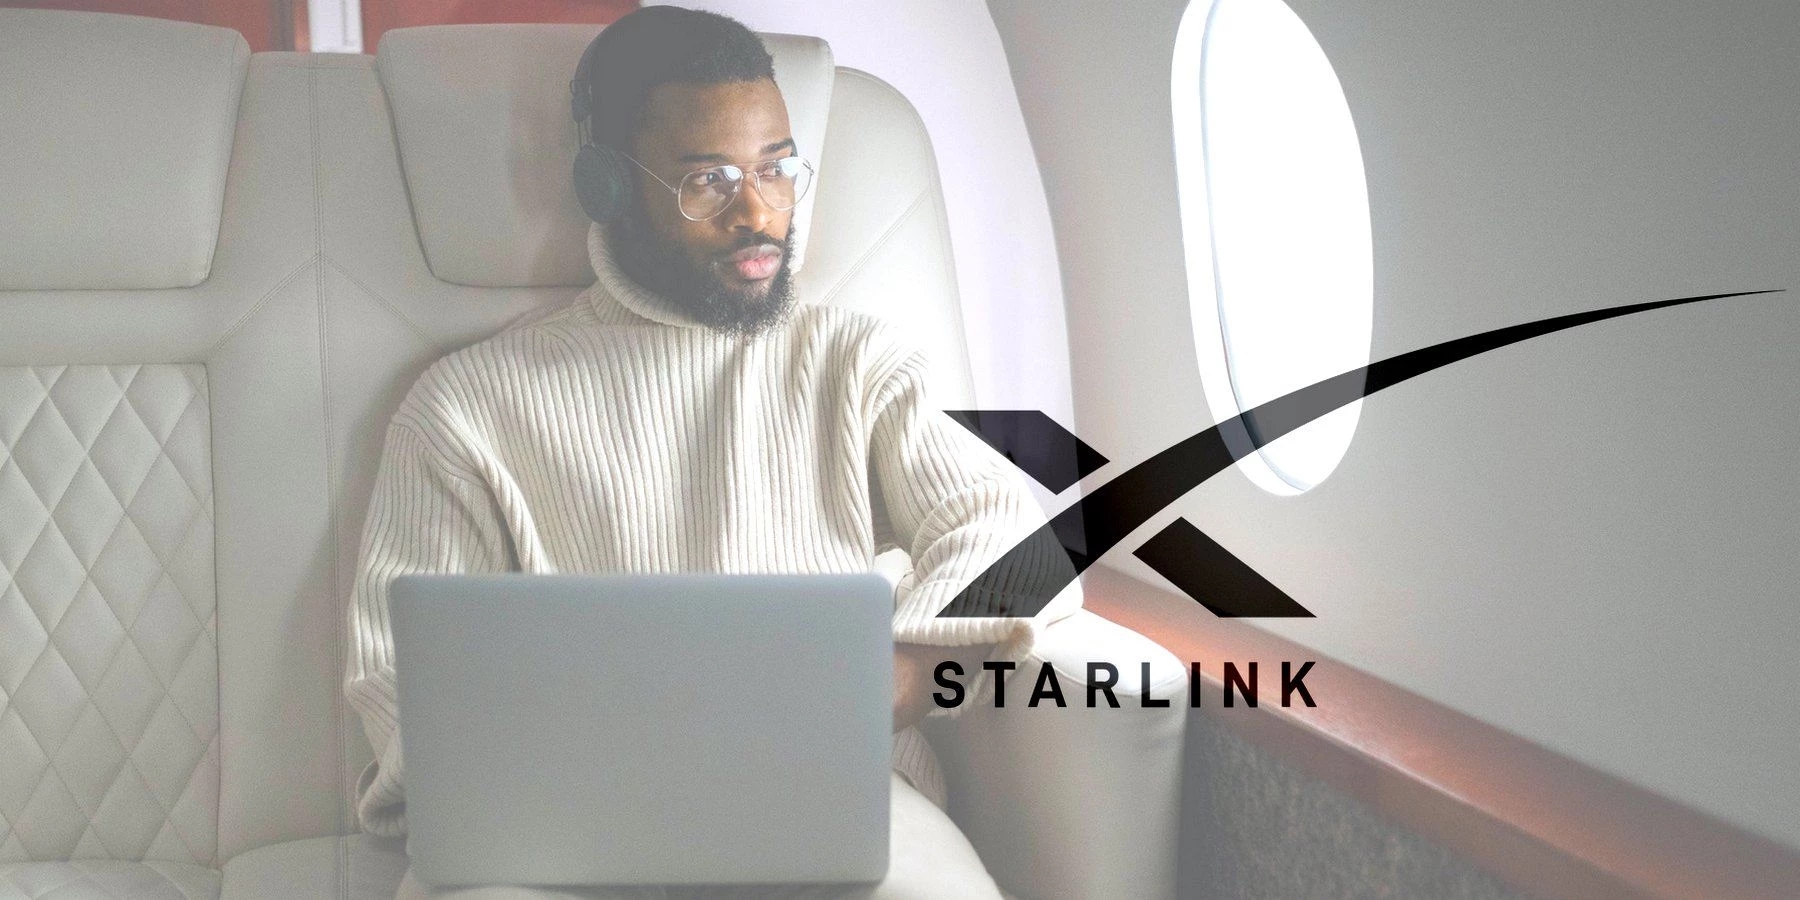 SpaceX hiện sẽ có thể cung cấp dịch vụ Starlink di động cho người tiêu dùng, doanh nghiệp và hơn thế nữa. Ảnh: @AFP.